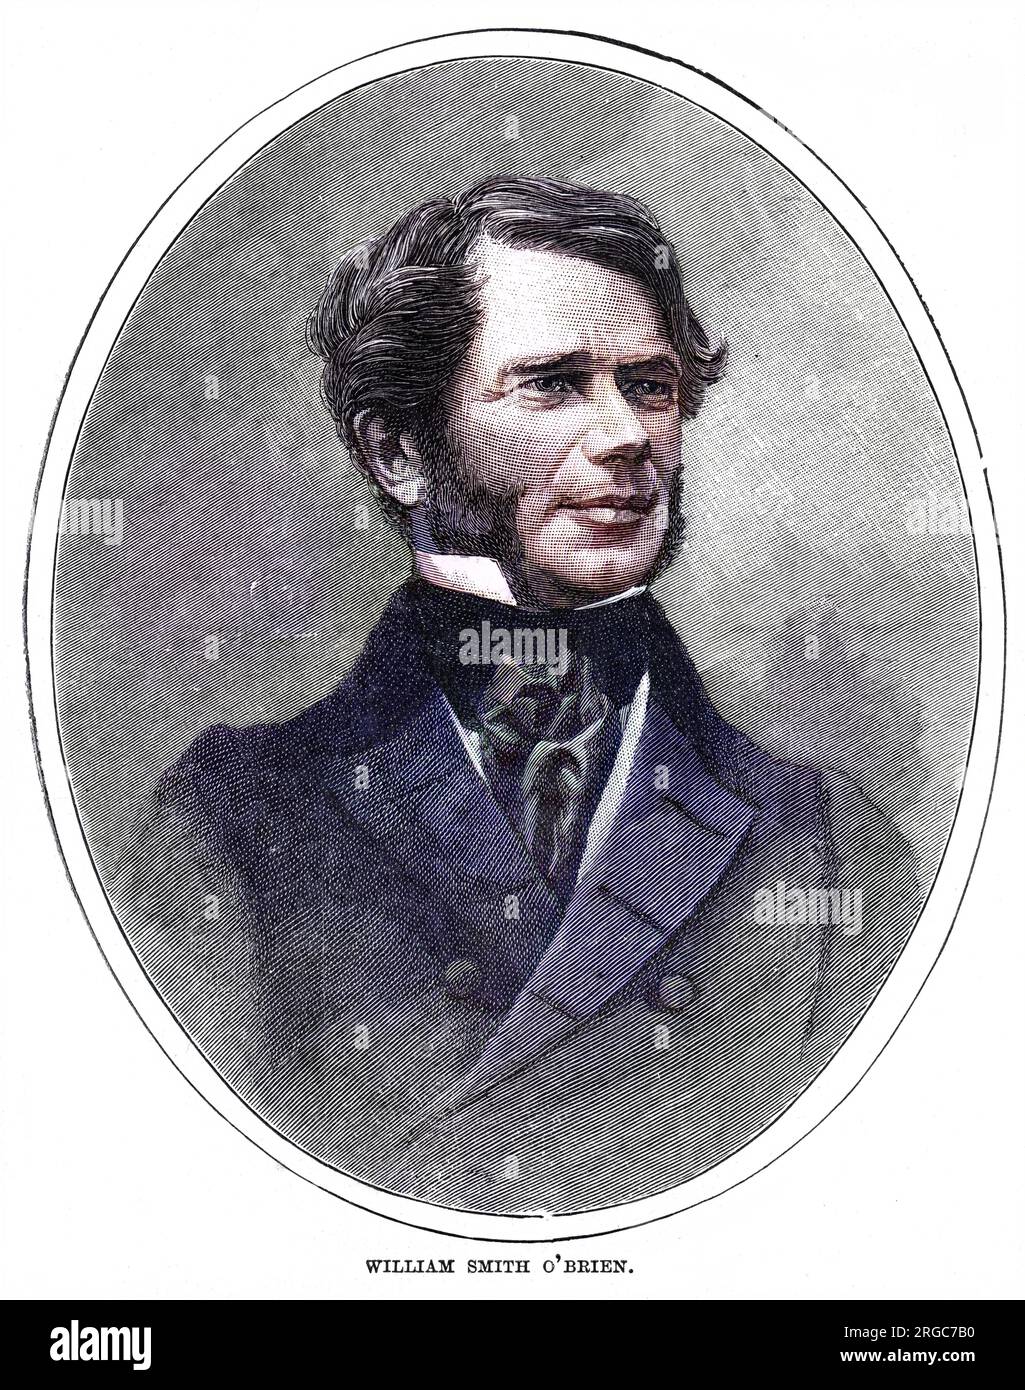 WILLIAM SMITH O'BRIEN - ein irischer Staatsmann, ein Patriot, der sich der Aufhebung der Unruhe im Jahr 1844 anschloss, aber mit O'Connell brach und eine revolutionäre Agenda unterstützte, die zu Schwierigkeiten führte. Stockfoto